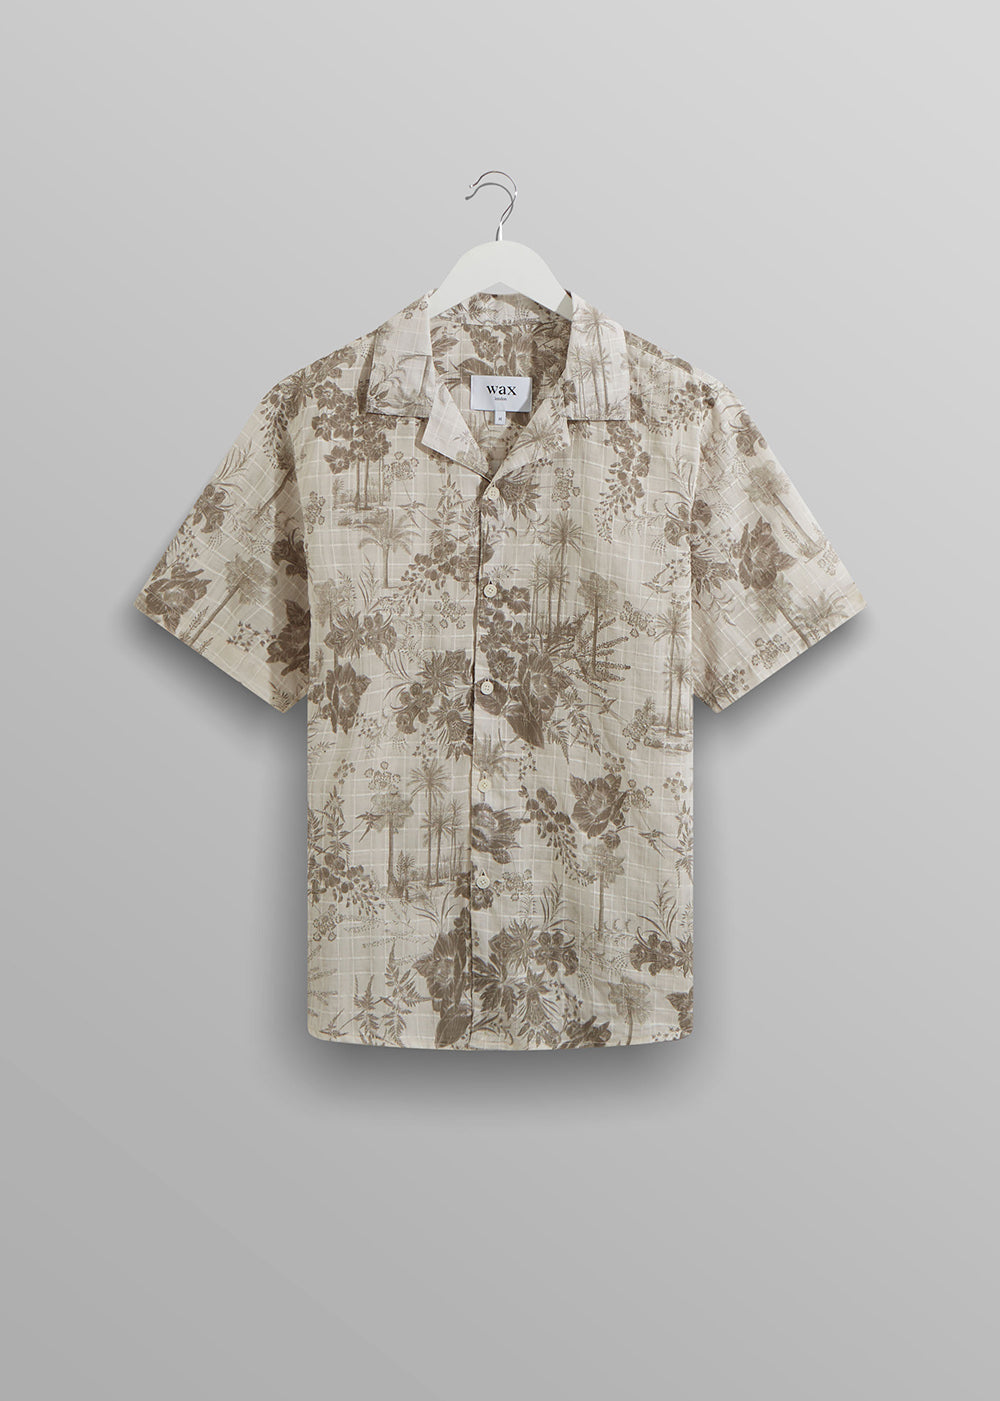 Didcot Shirt Palm Floral - Khaki - Wax London - Danali